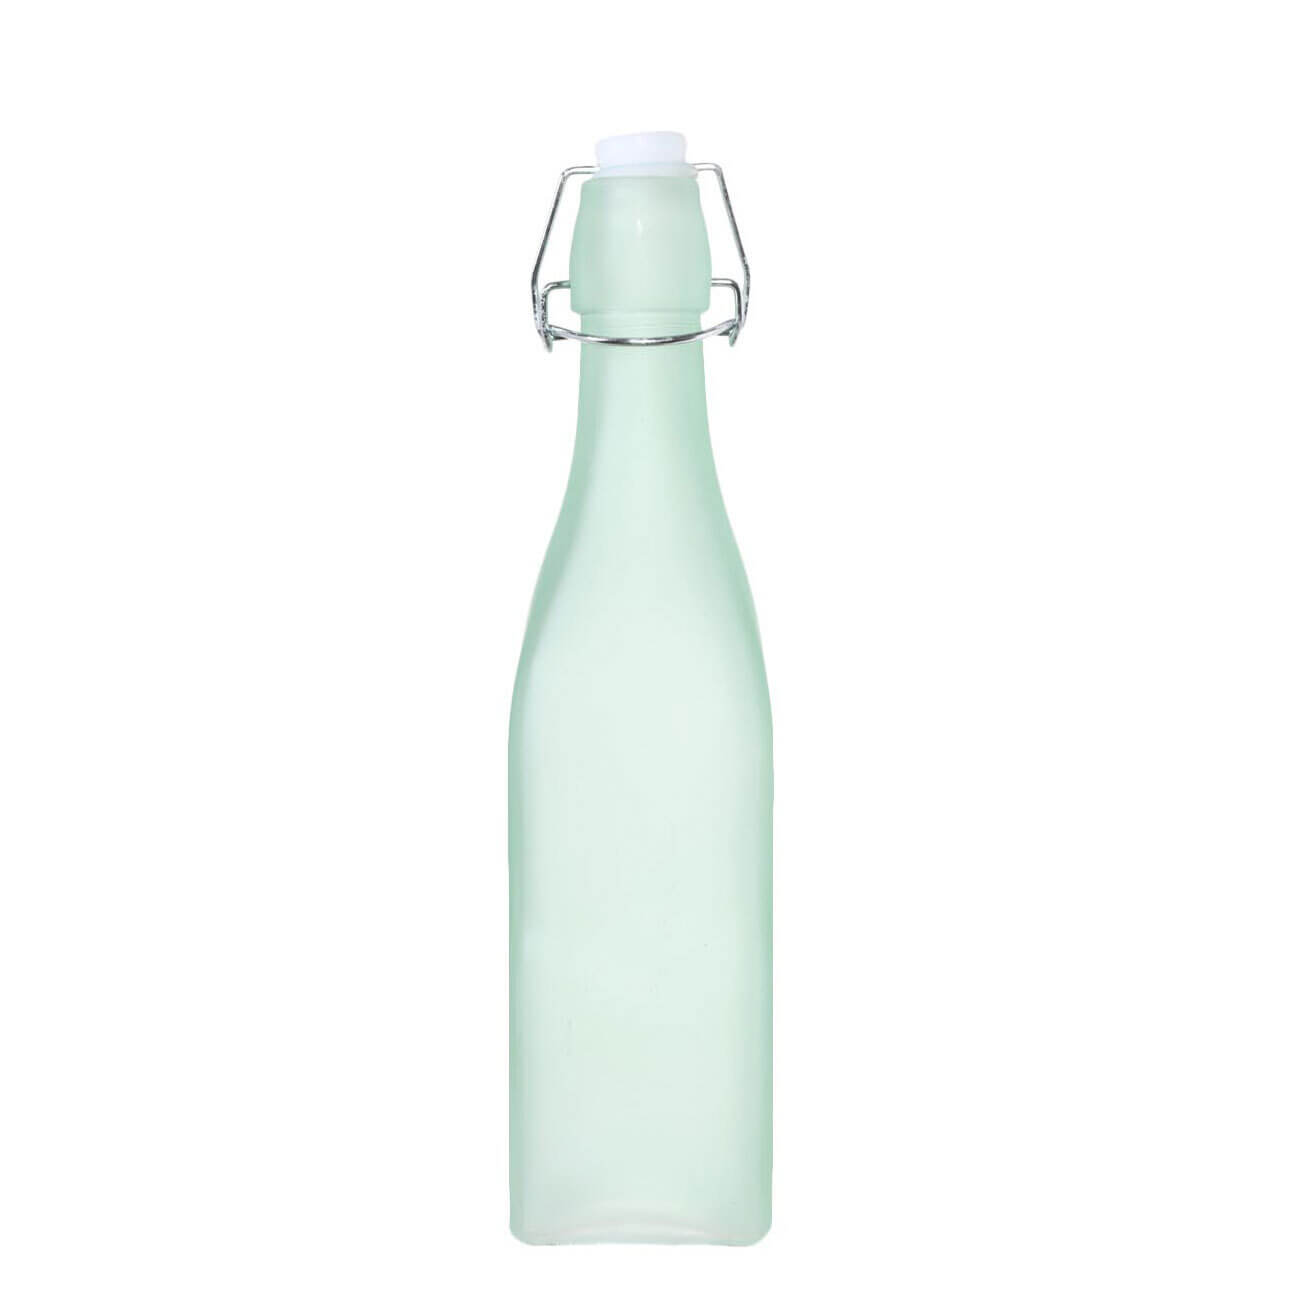 Бутылка для масла или уксуса, 500 мл, с клипсой, стекло/металл, зеленая, Light kitchen изображение № 1